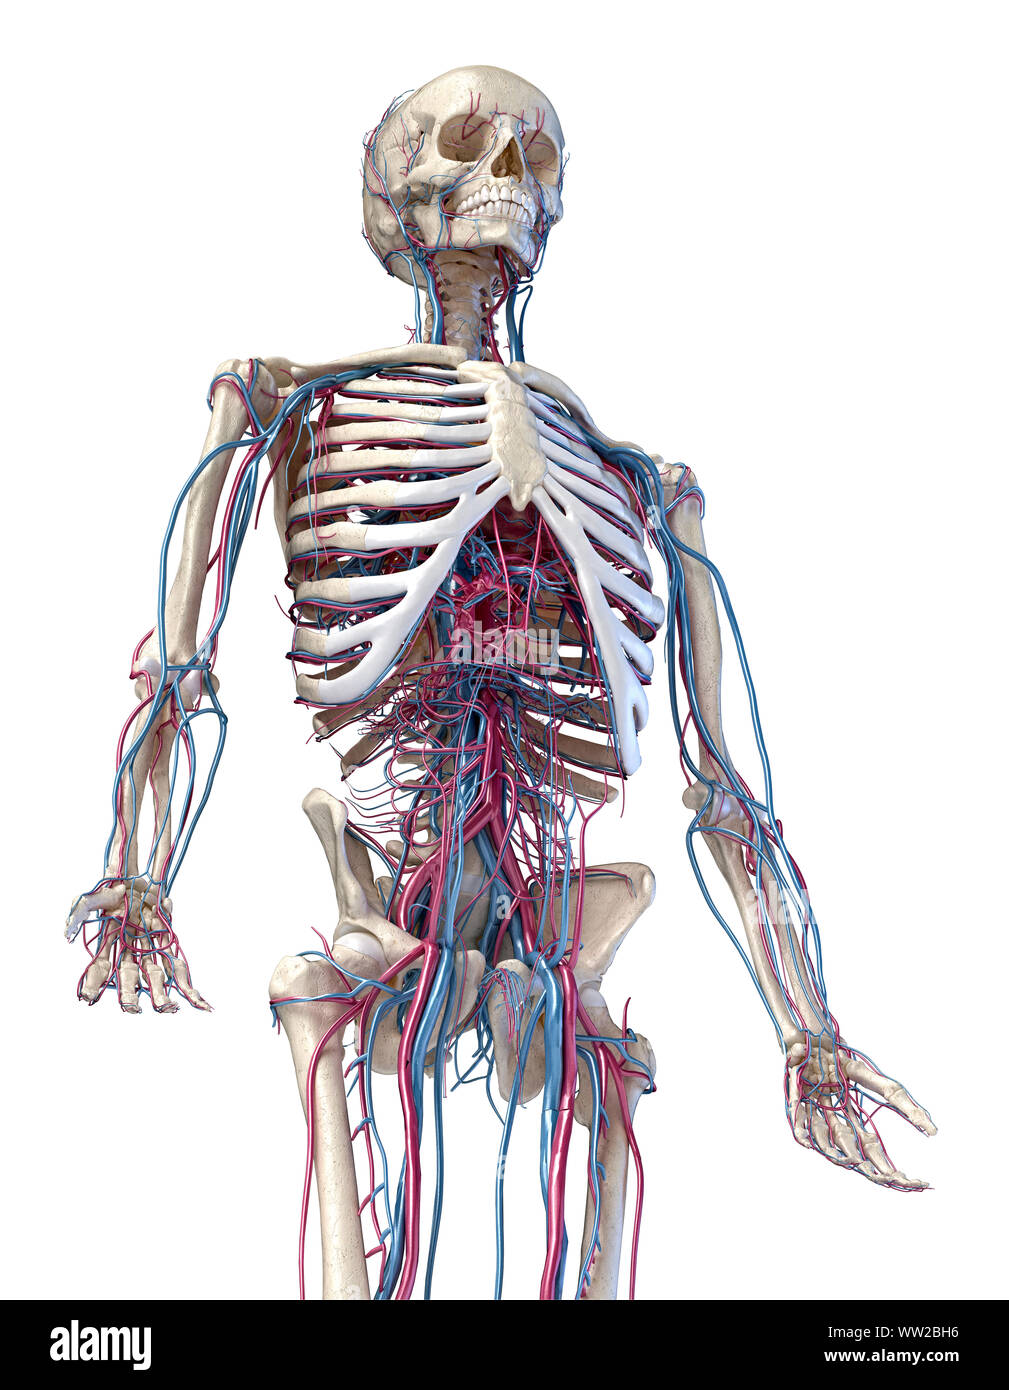 Der menschlichen Anatomie, 3D-Darstellung der Skelett mit Herz-Kreislauf-System. Perspektivische Ansicht von 3/4 oberen Teil der Vorderseite. Auf weissem Hintergrund. Stockfoto